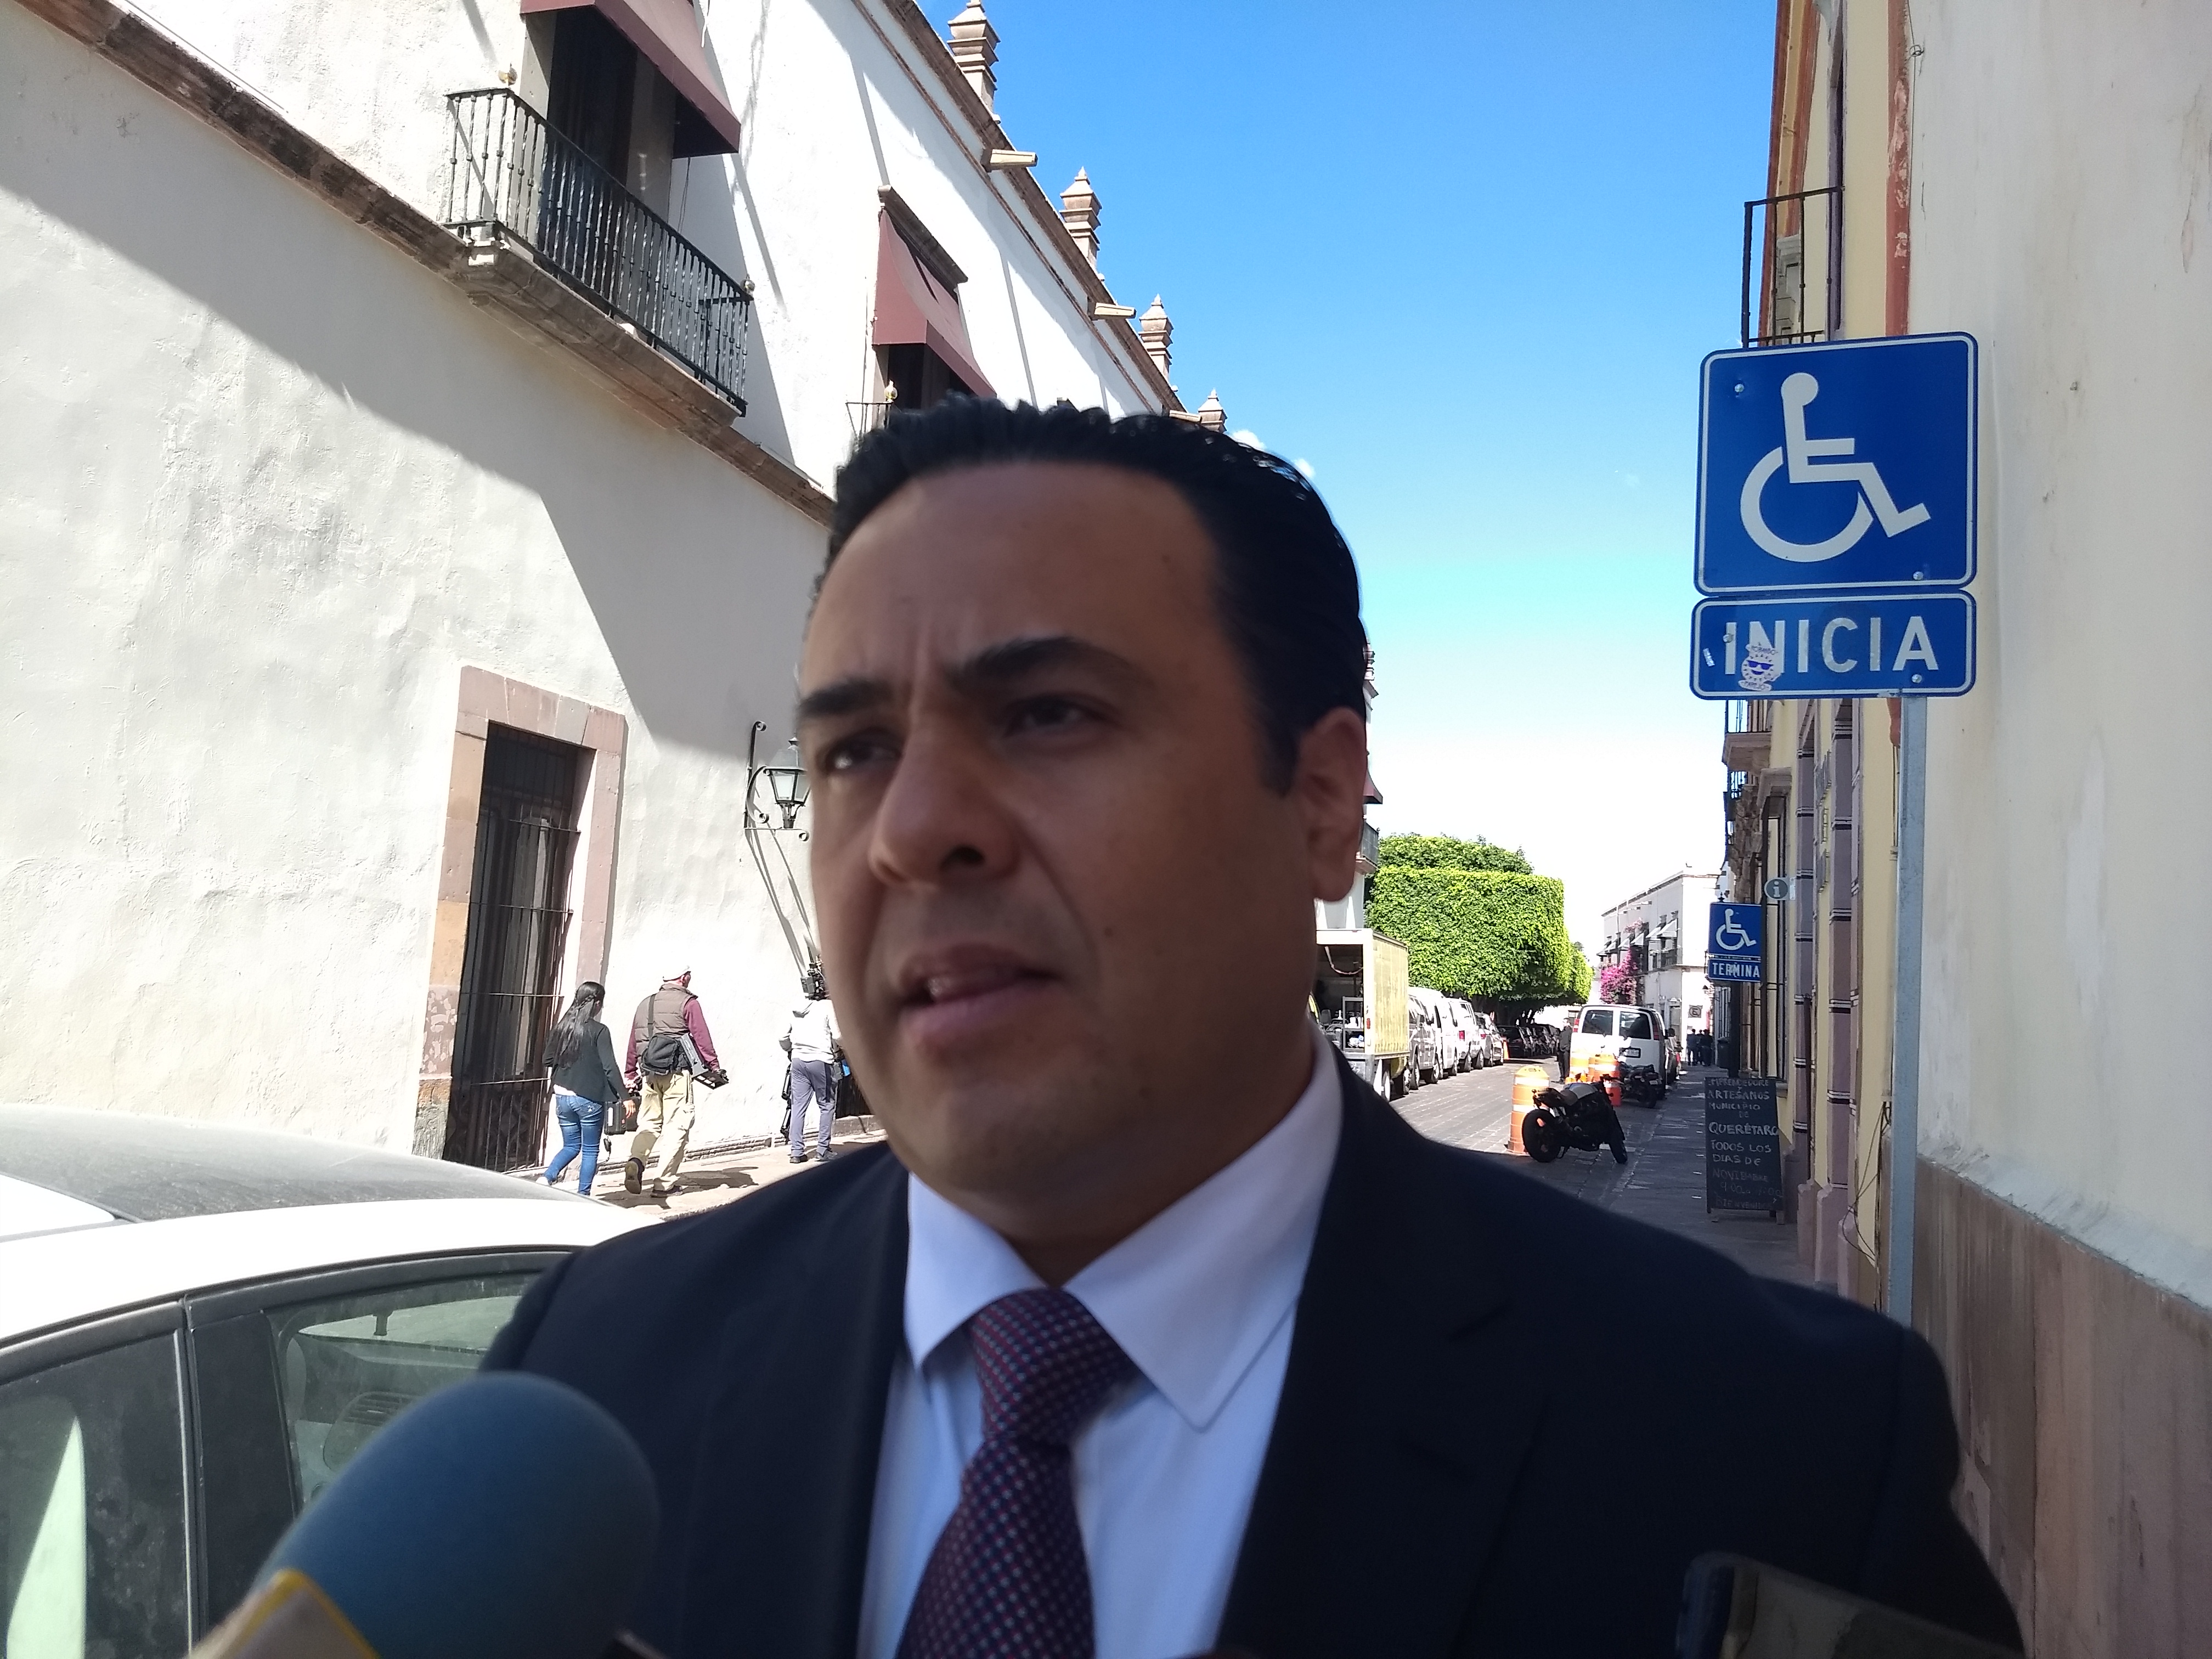  Confirma Pancho Domínguez que Luis Bernardo Nava sí se registrará para contender por alcaldía de Querétaro